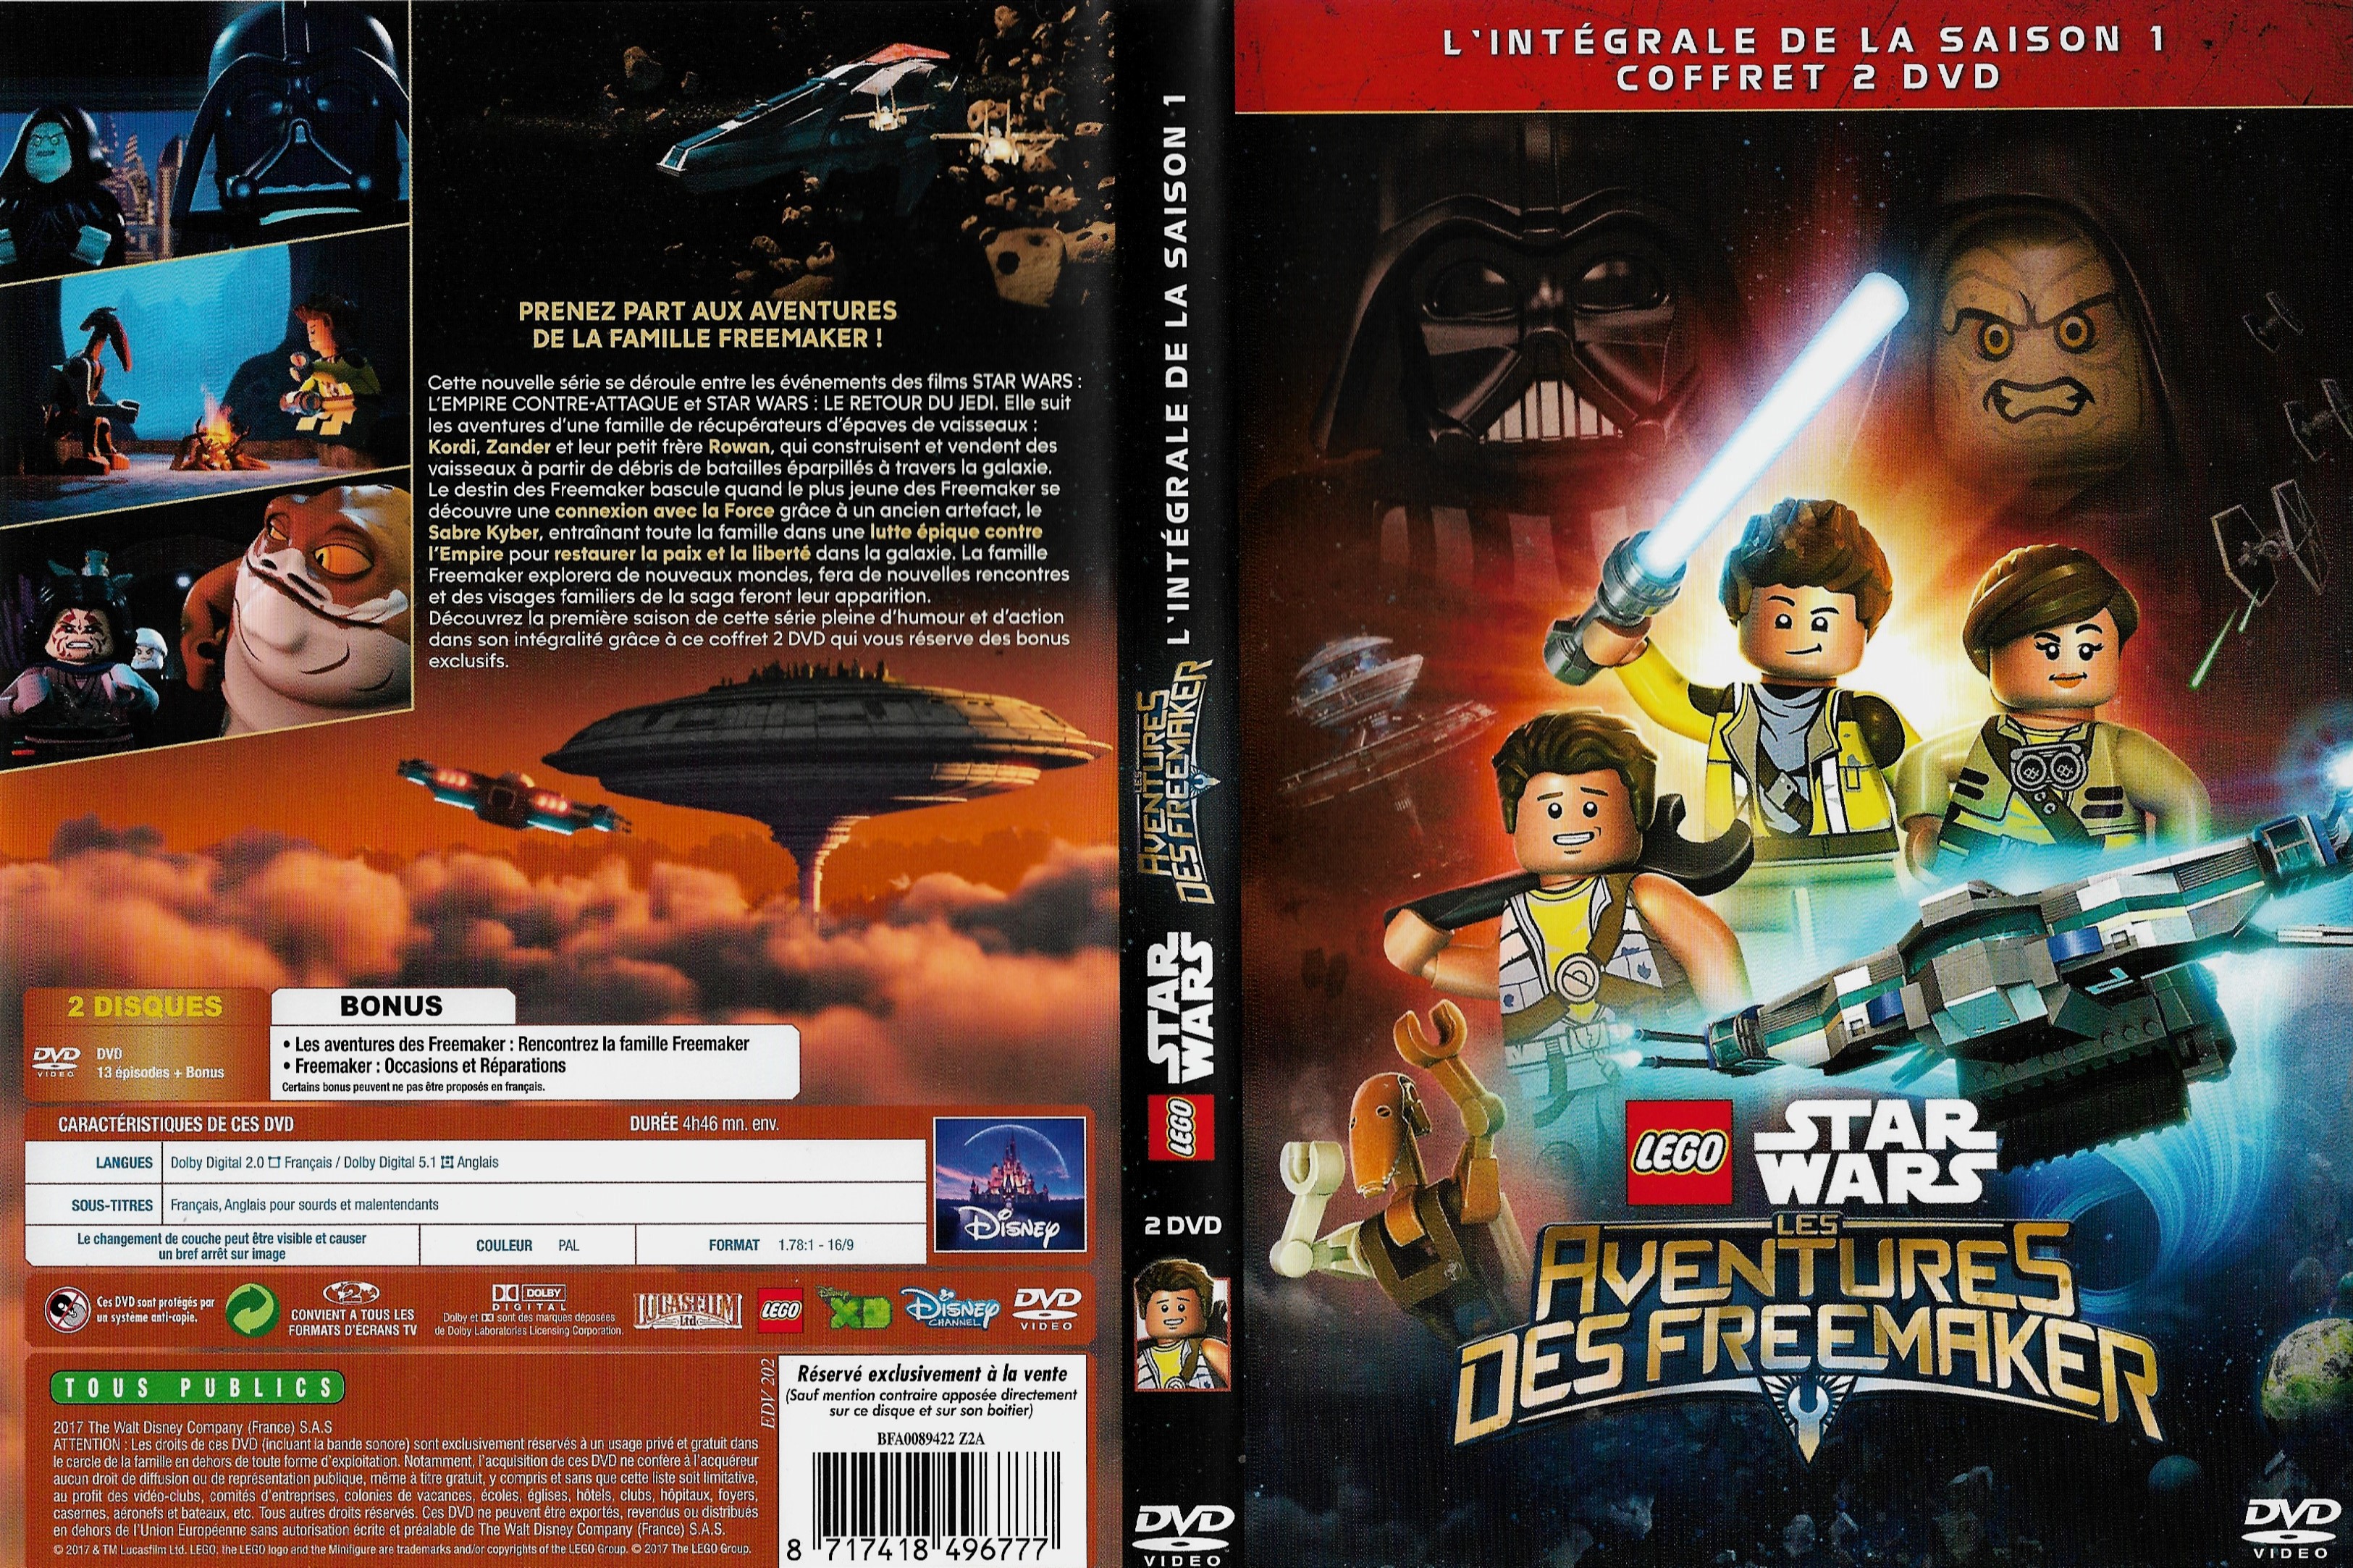 Jaquette DVD Lego Star Wars Les Aventures des Freemakers saison 1 